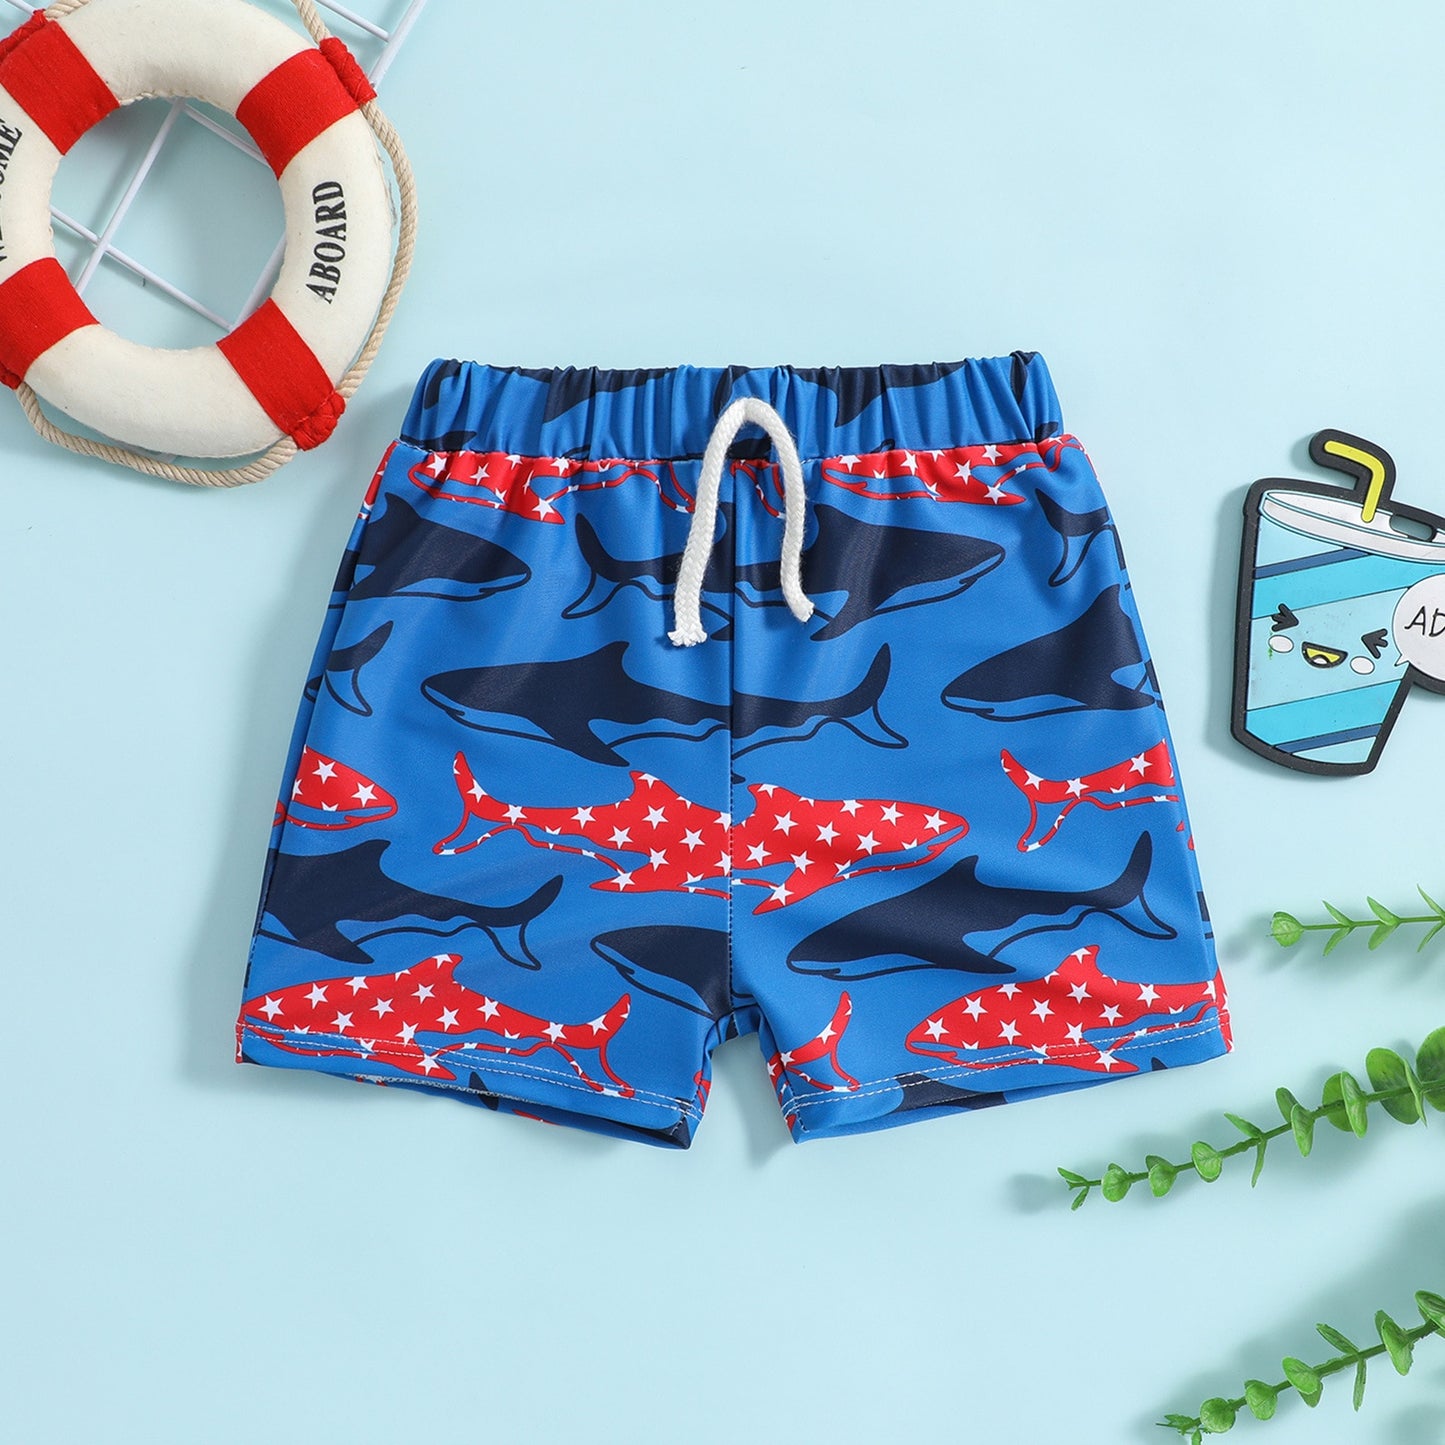 Children's Swimming Trunks New Cartoon Printed Swimming Shorts